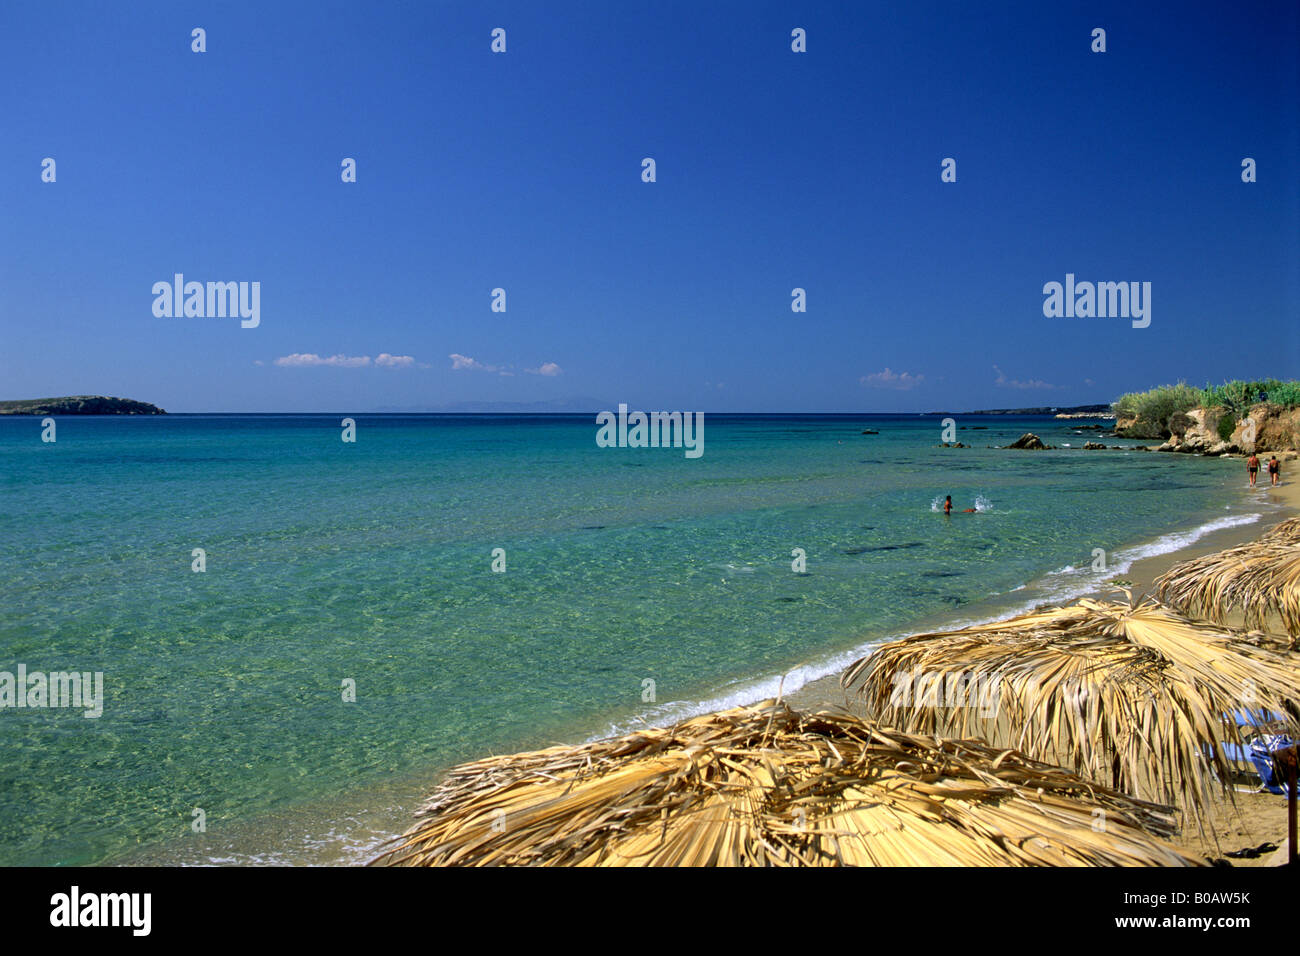 Greece, Cyclades Islands, Paros, Golden beach Stock Photo